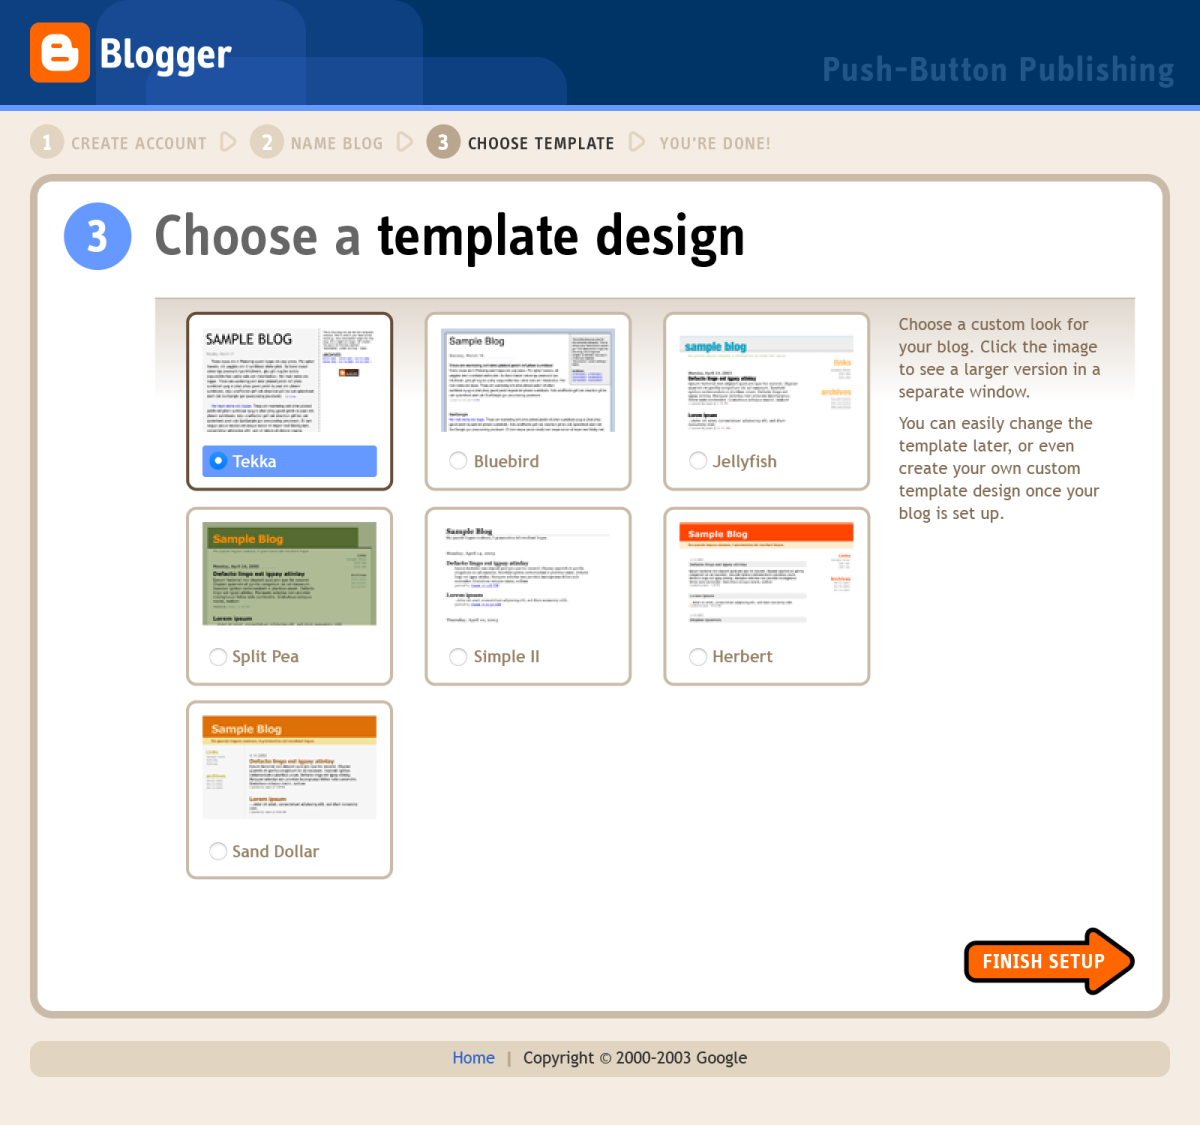 Blogger registration flow, step 3 (Choose a template design)